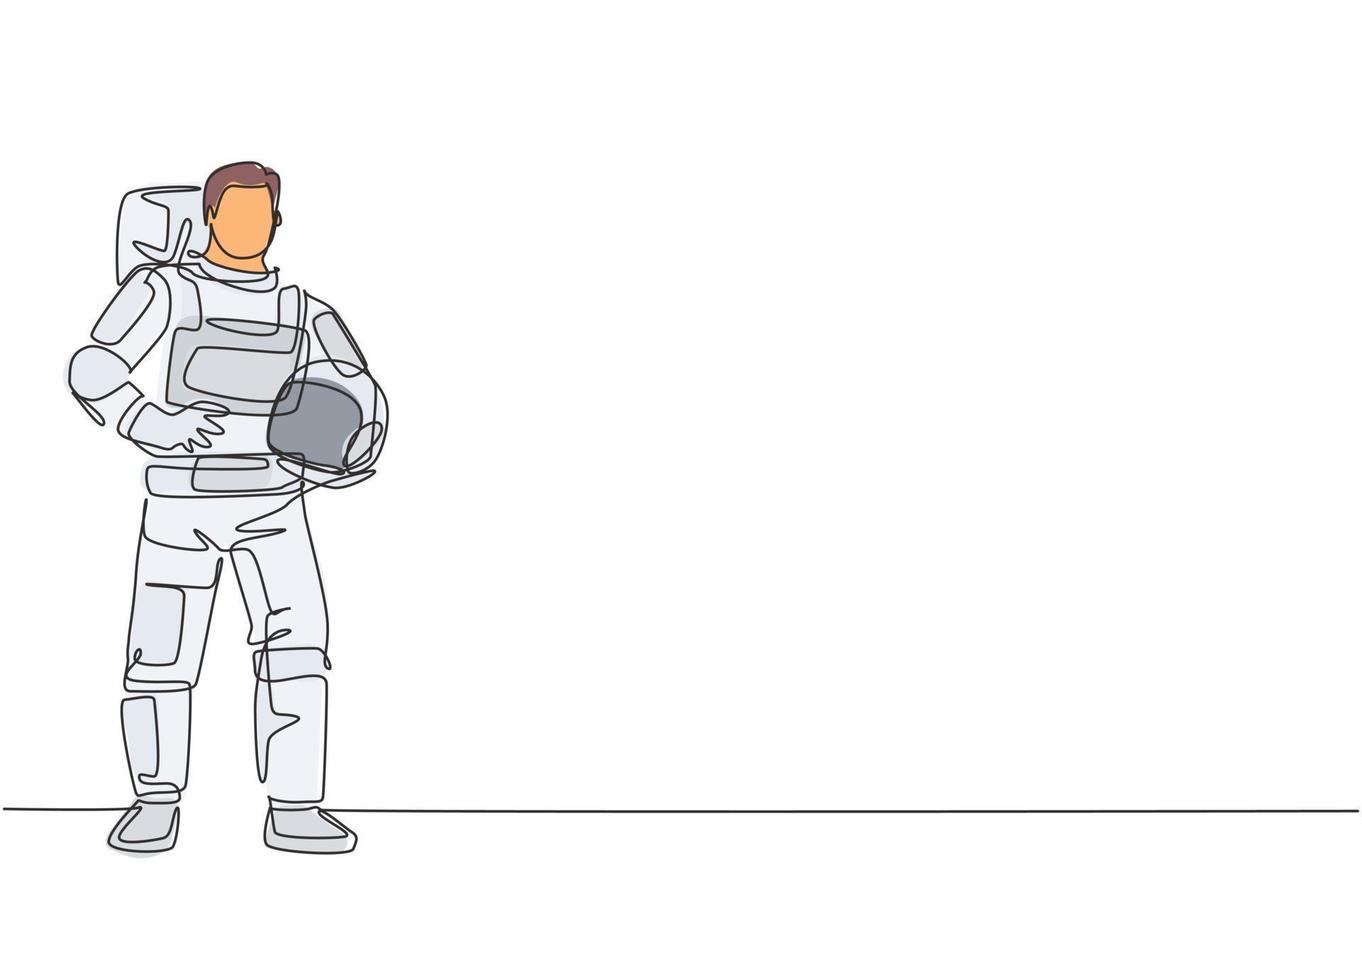 kontinuerlig enradsteckning av ung manlig astronaut poserar stående och håller hjälm. professionellt jobb yrke minimalistiskt koncept. enkel linje rita design vektor grafisk illustration